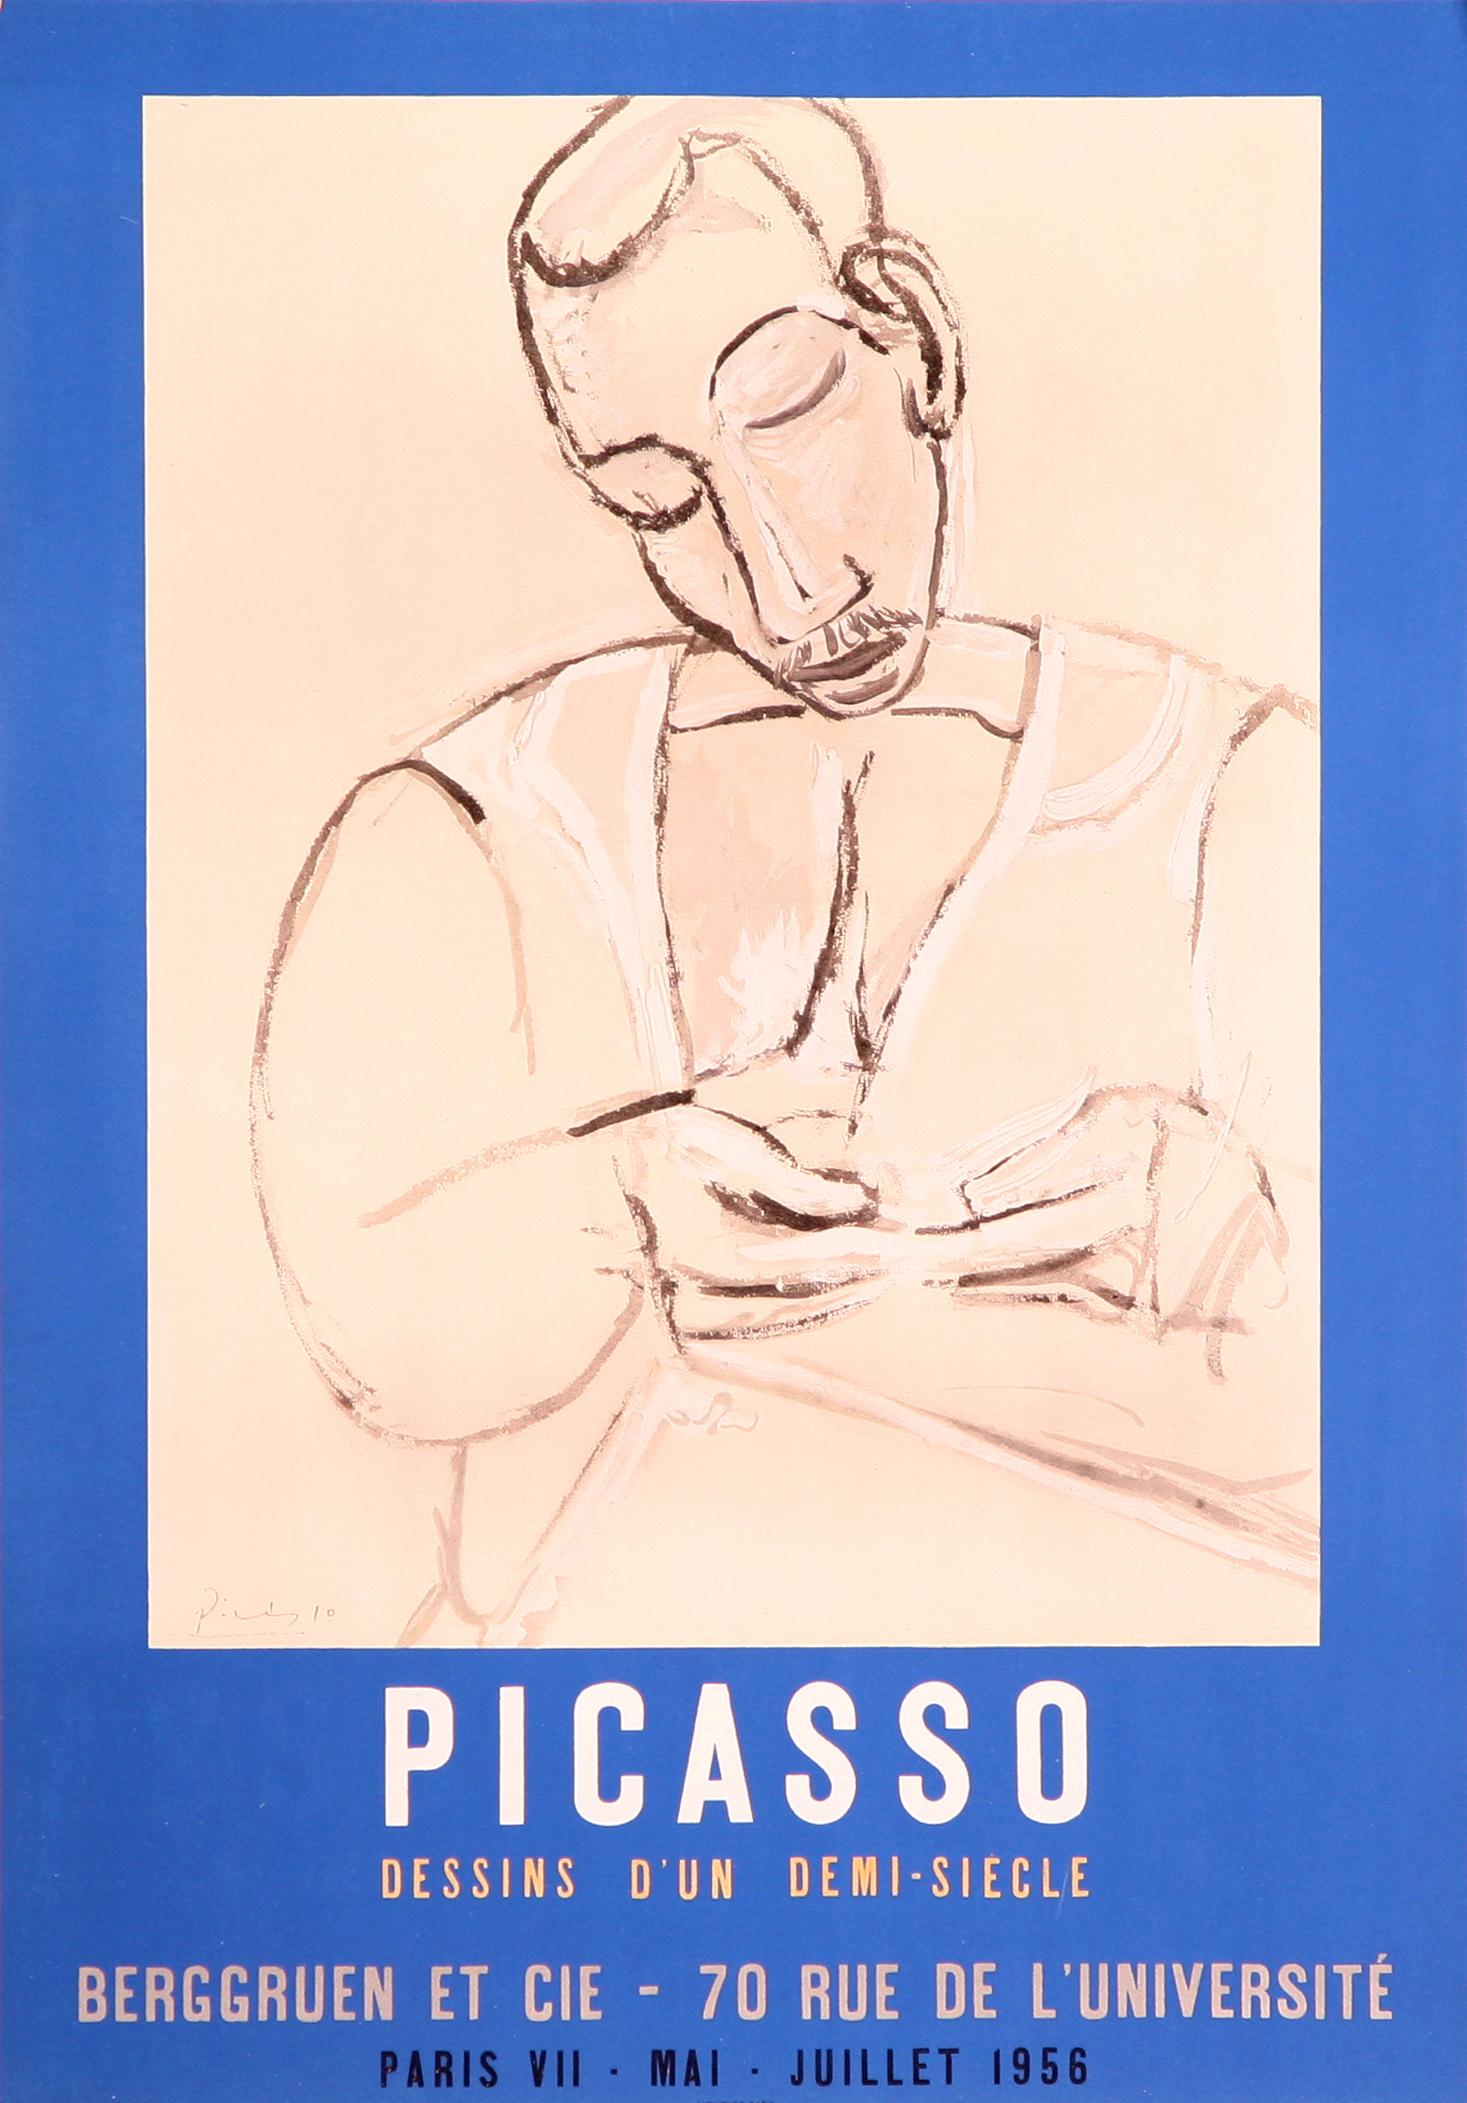 Dessins d'un Demi-Siecle - Berggruen et CIE (d'après) Picasso, 1956